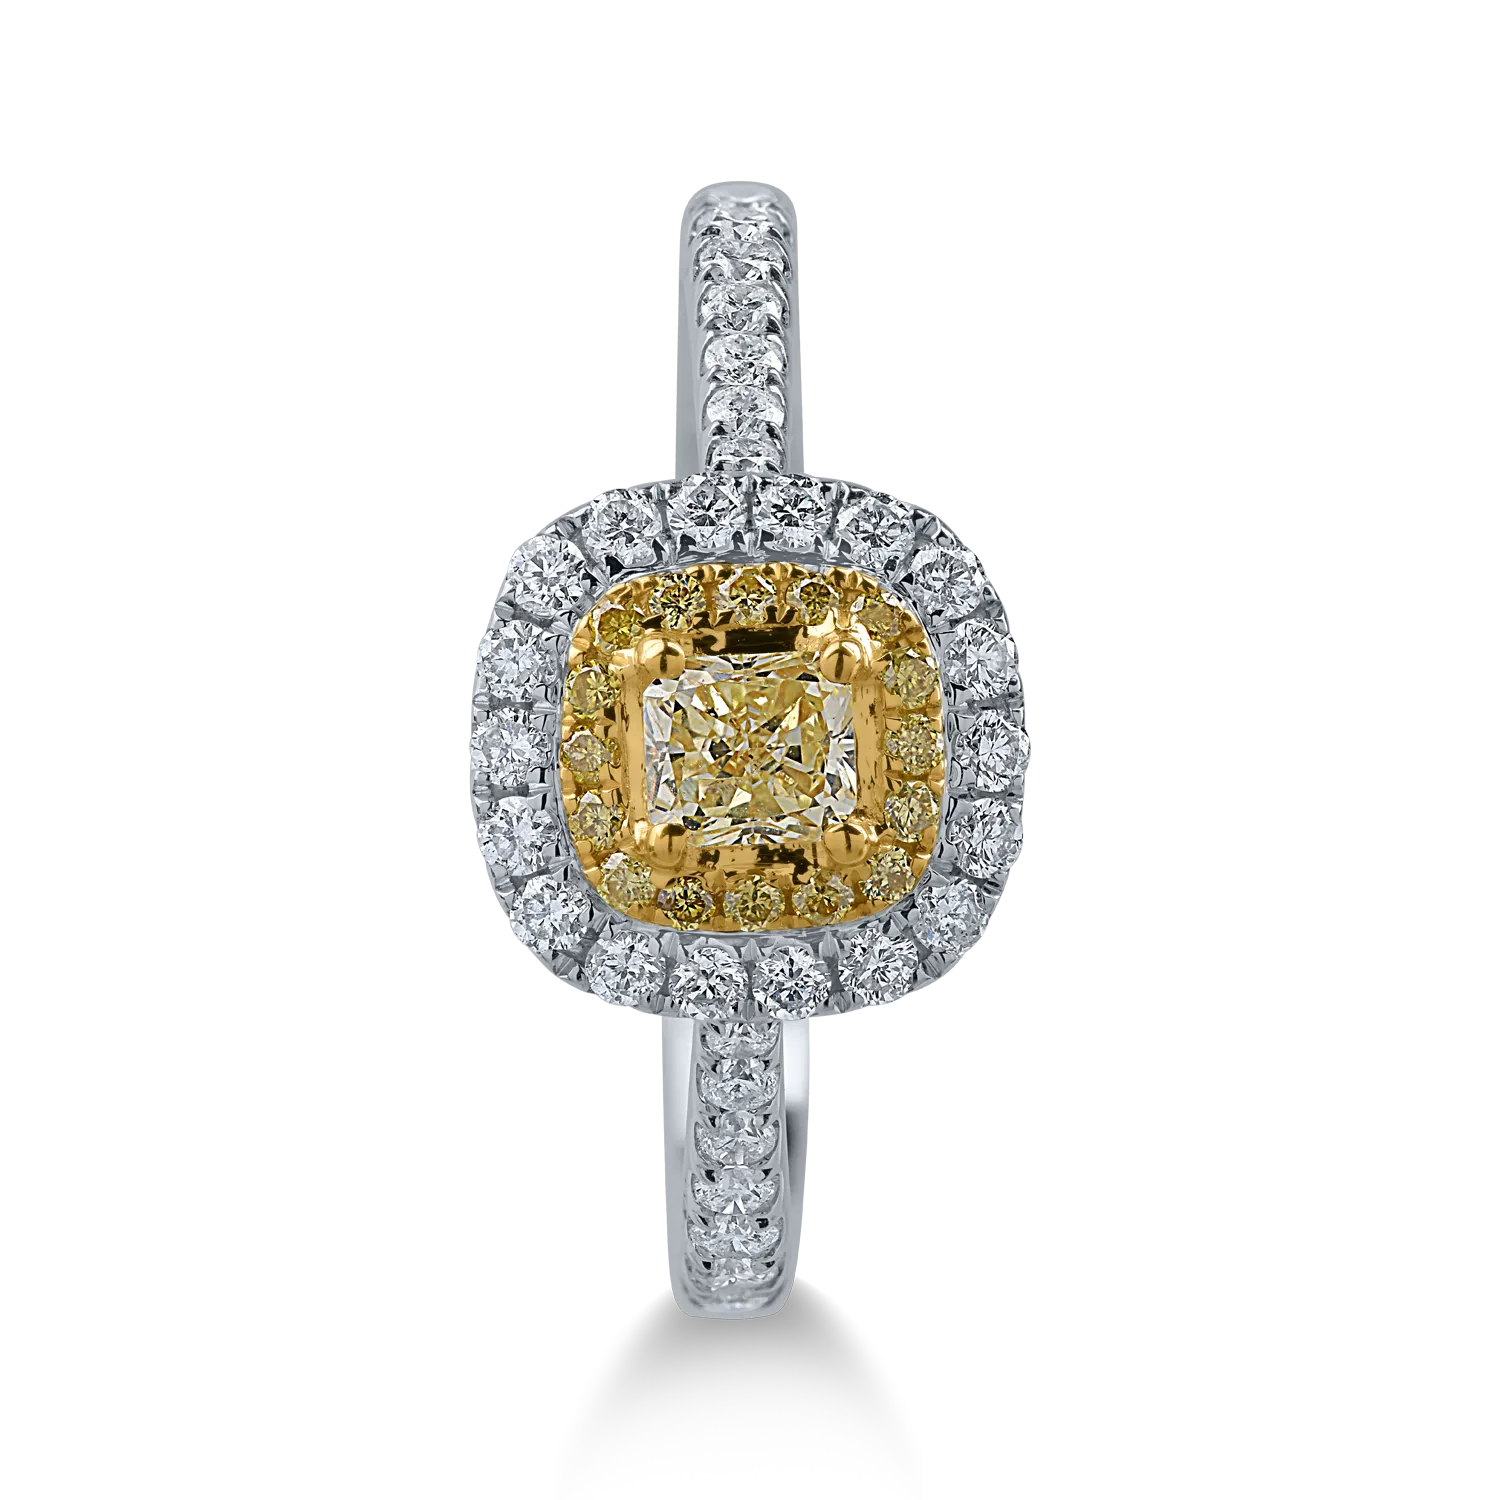 Inel din aur alb-galben cu diamante galbene 0.41ct si diamante transparente de 0.46ct